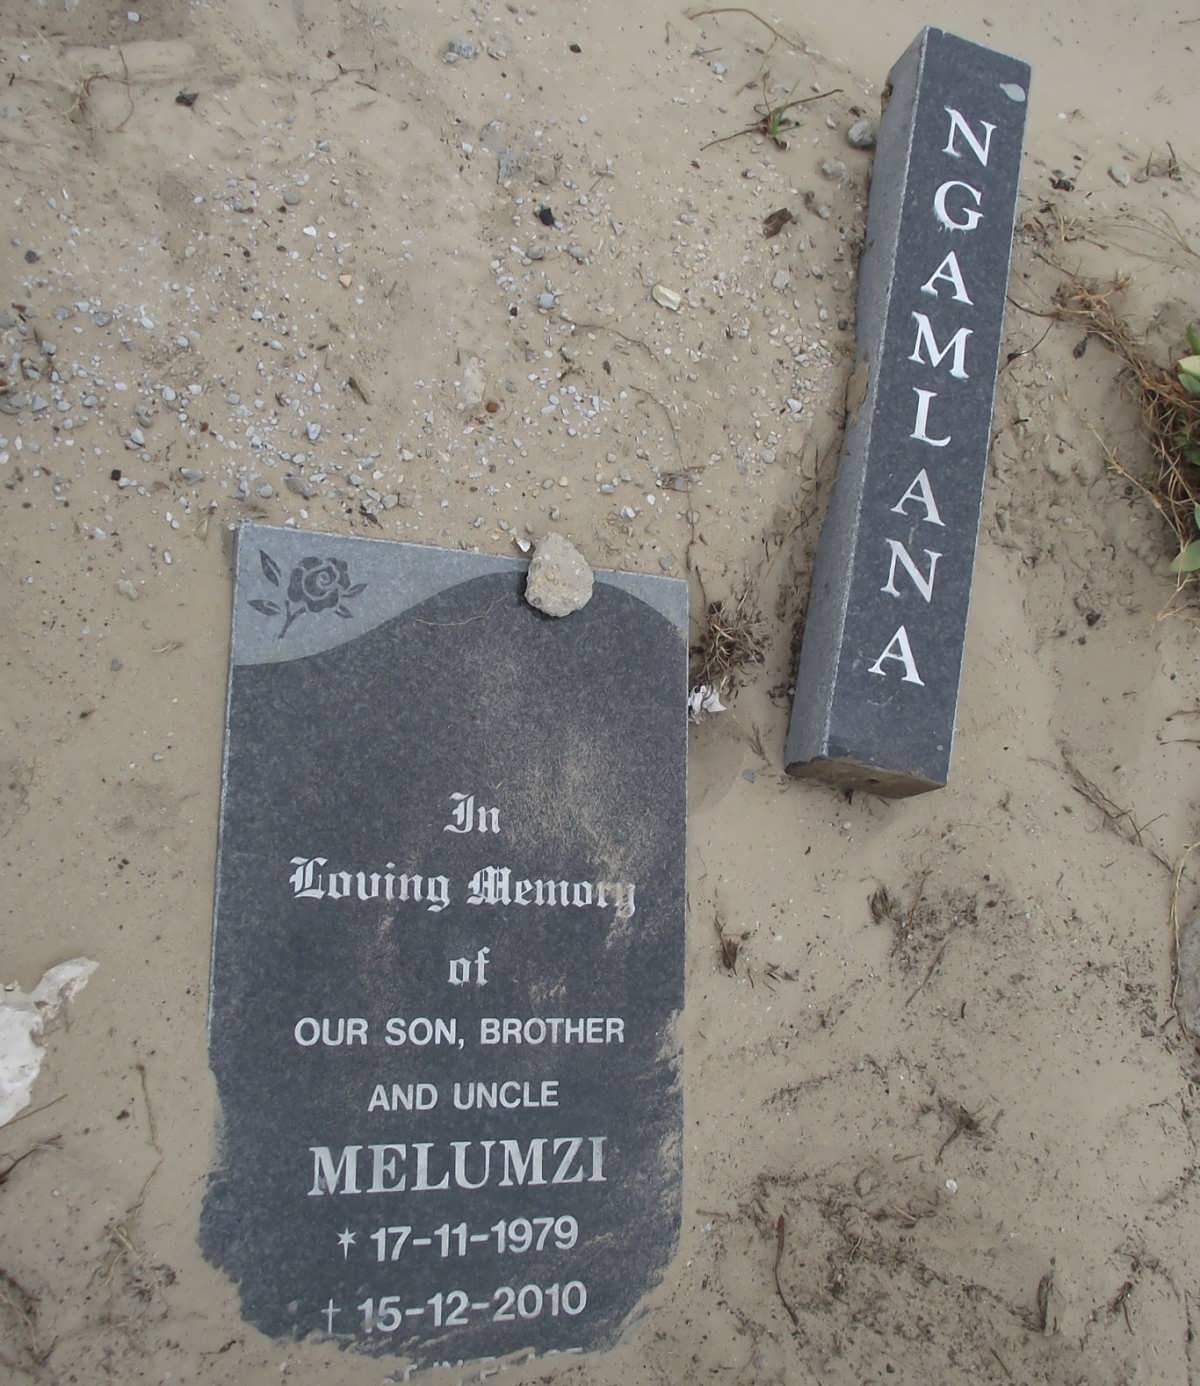 NGAMLANA Melumzi 1979-2010